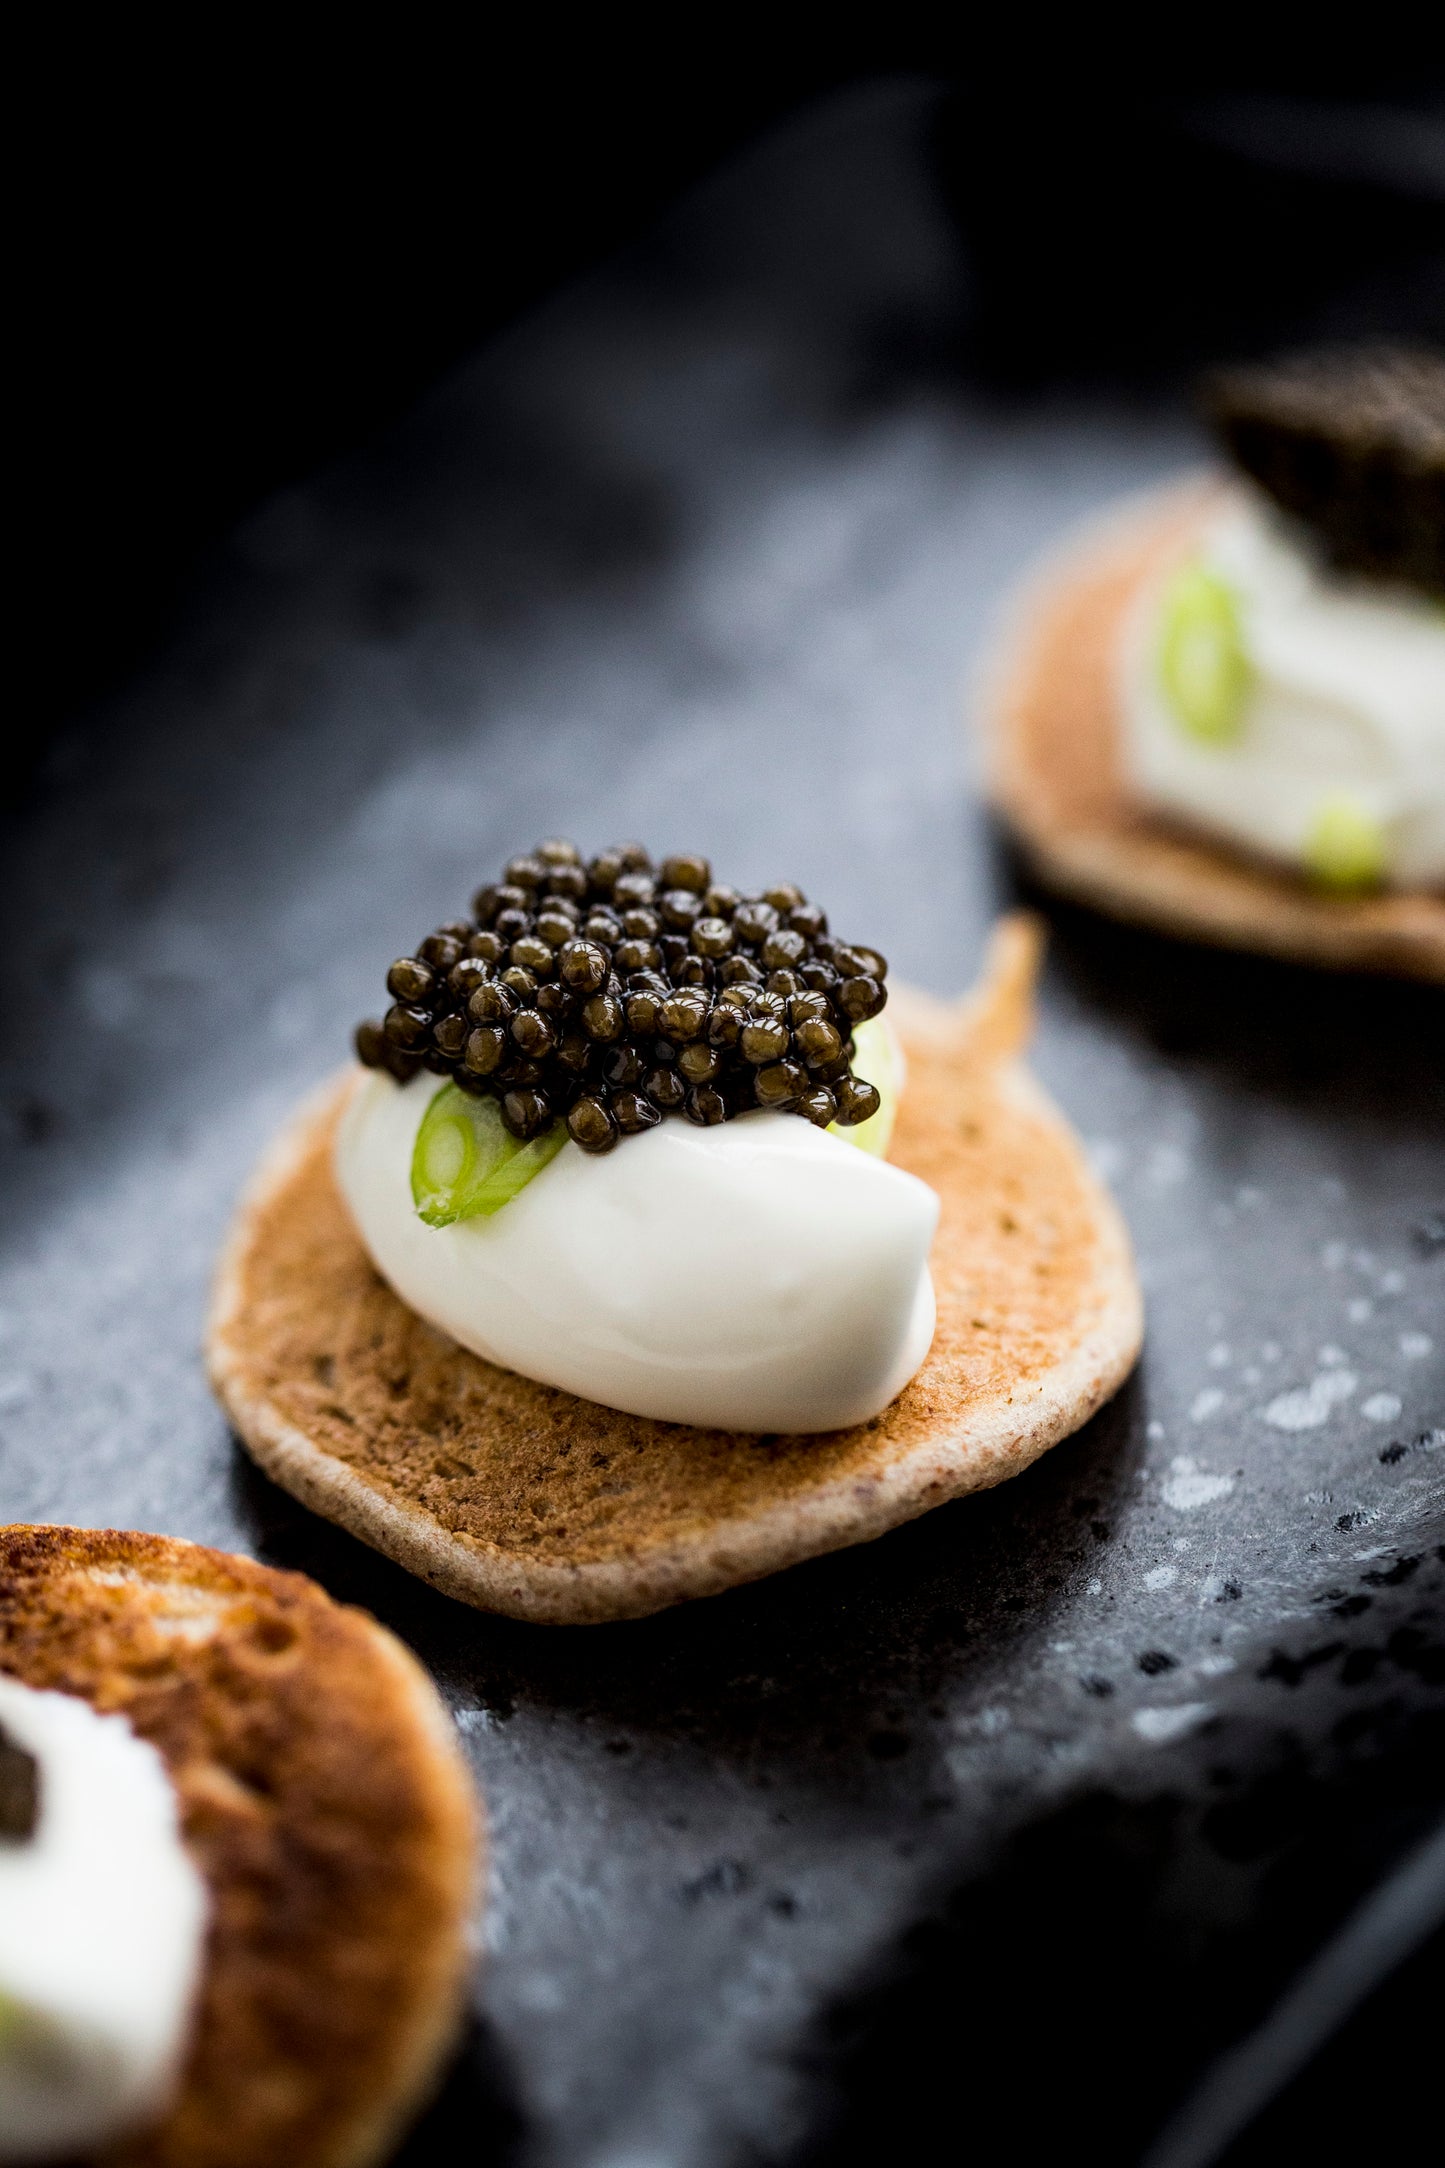 Caviar 1st Experience Kit